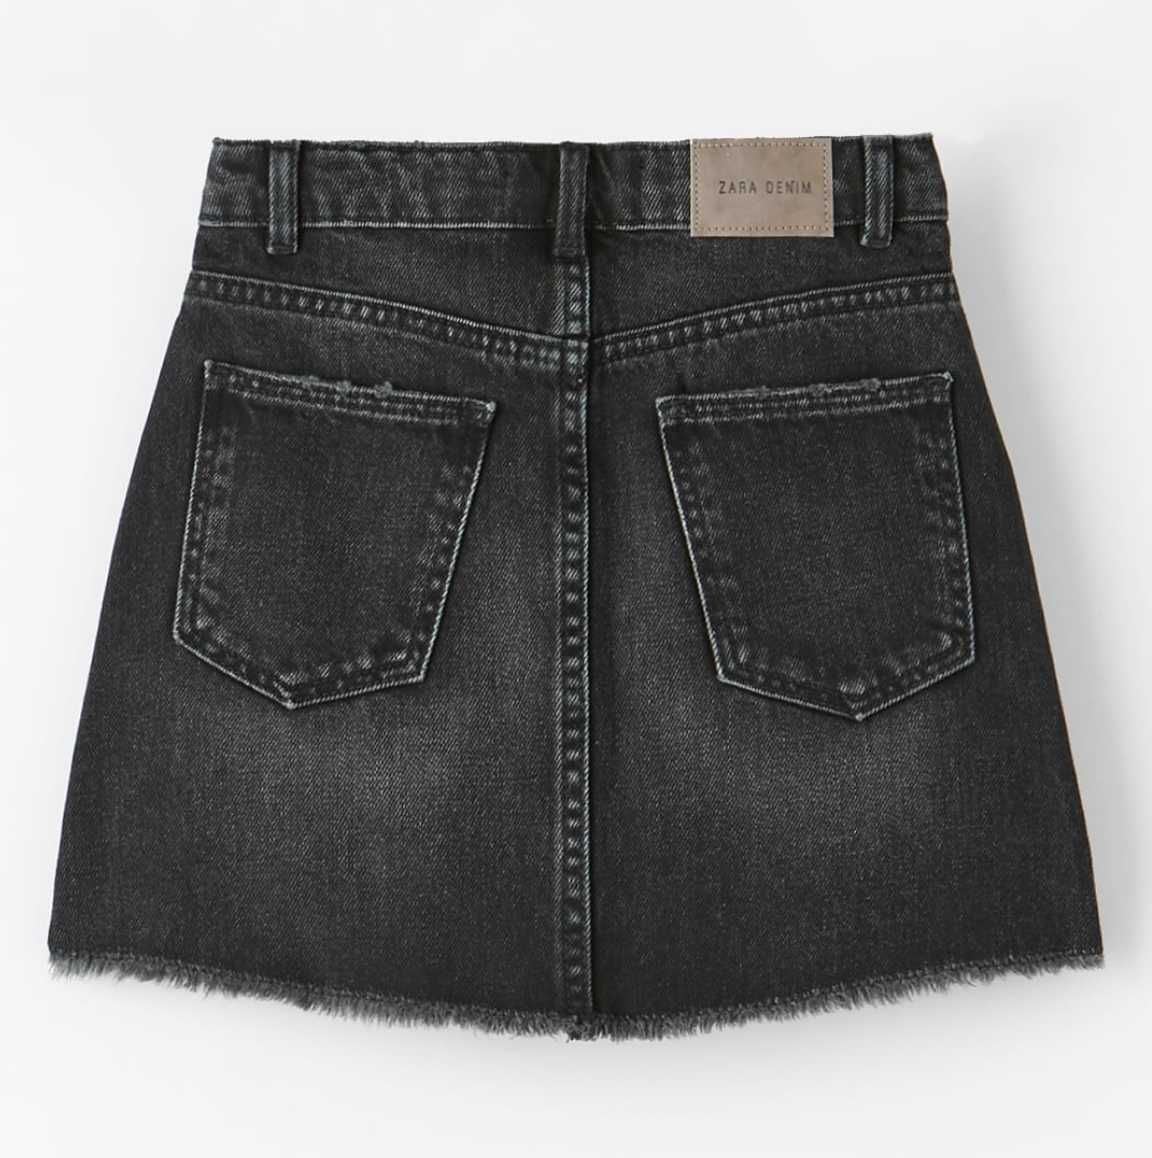 Zara nowa czarna spódnica jeansowa z przetarciami 11 12 lat 152